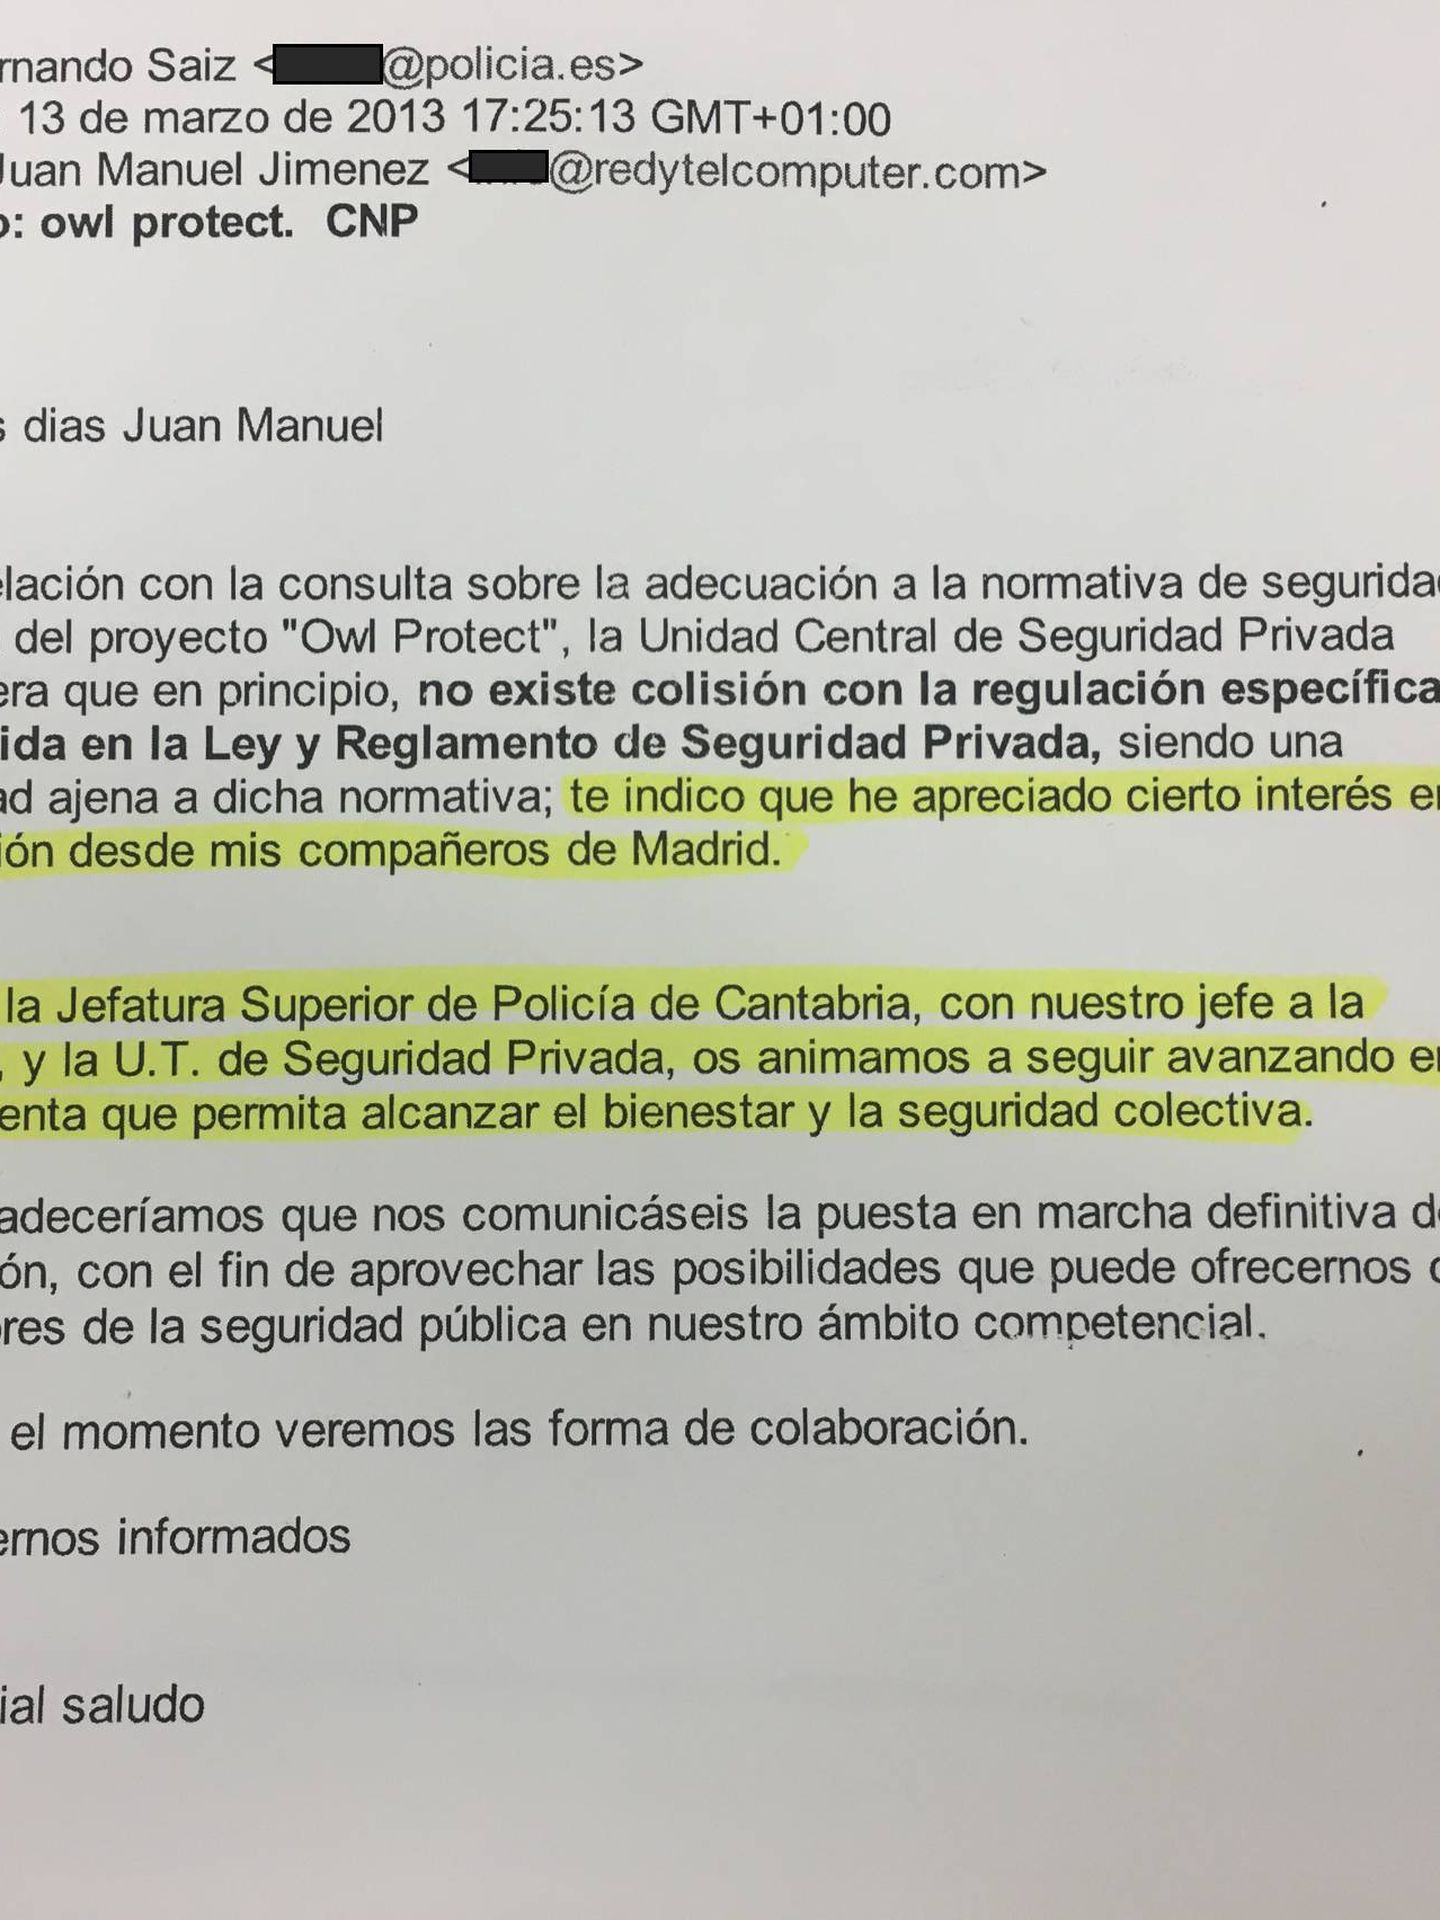 Pinche para leer el 'e-mail' con el jefe de la unidad de seguridad privada de la CNP de Cantabria.